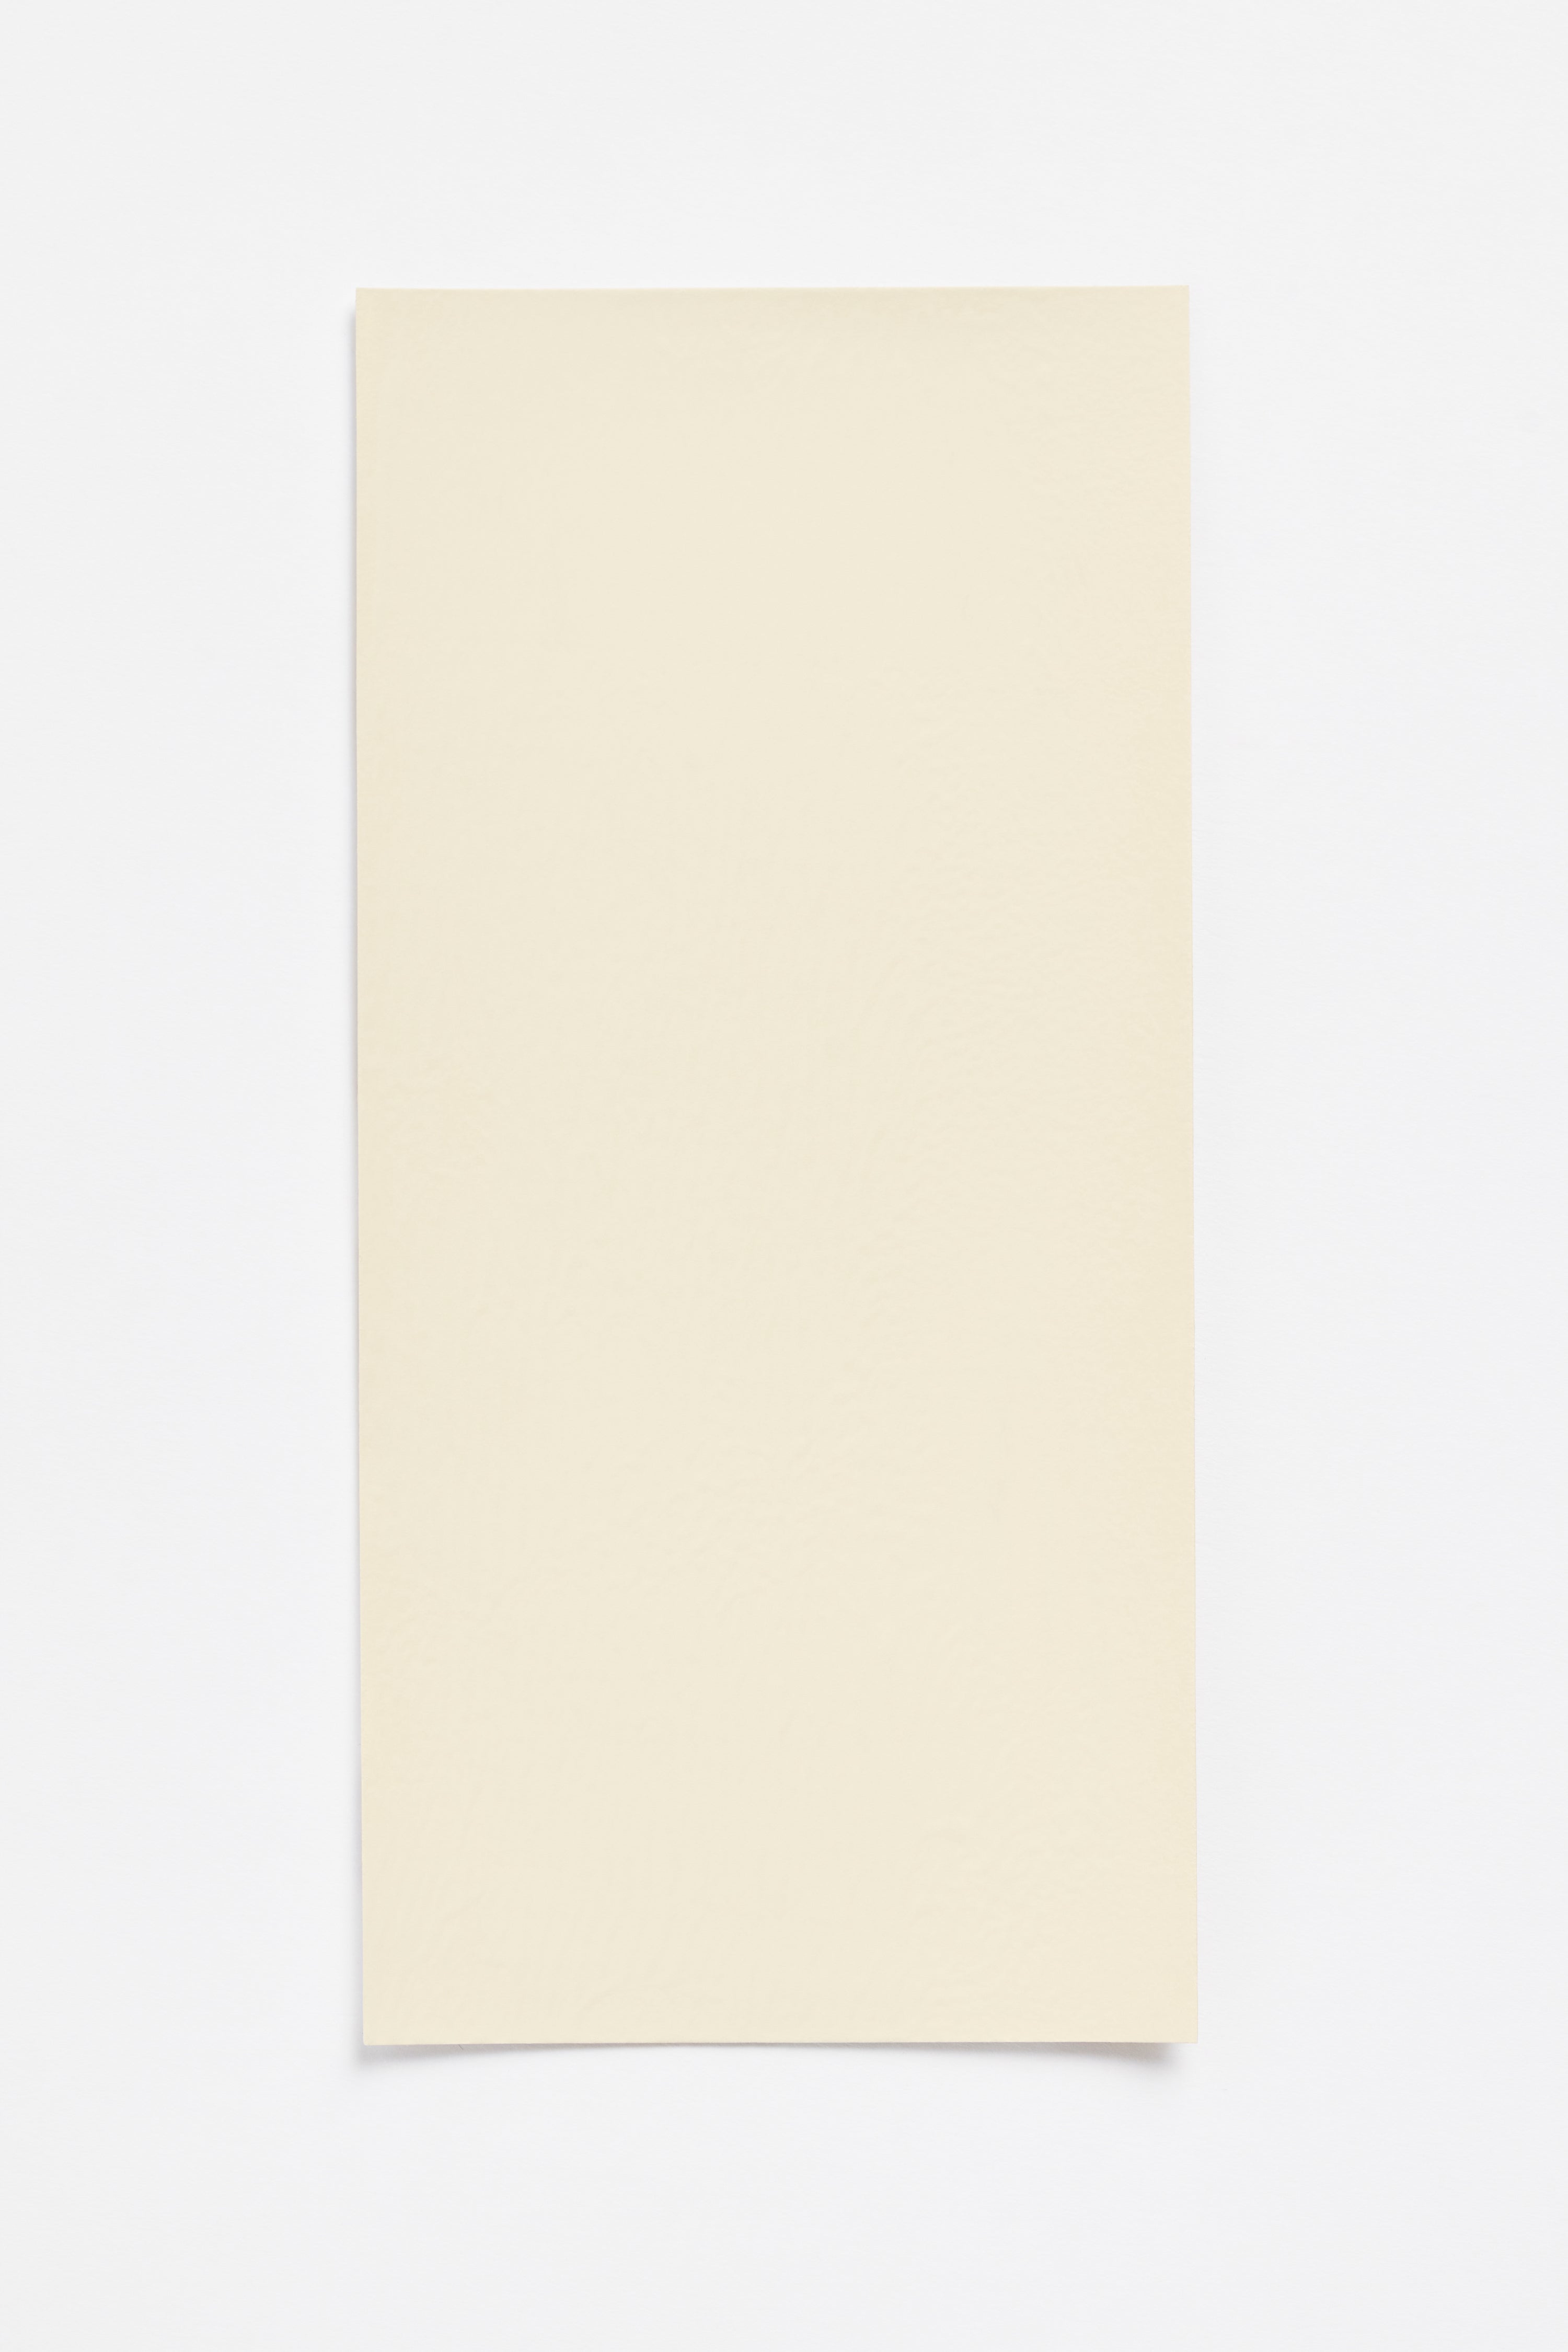 Almond Light — a paint colour developed by Sabine Marcelis for Blēo